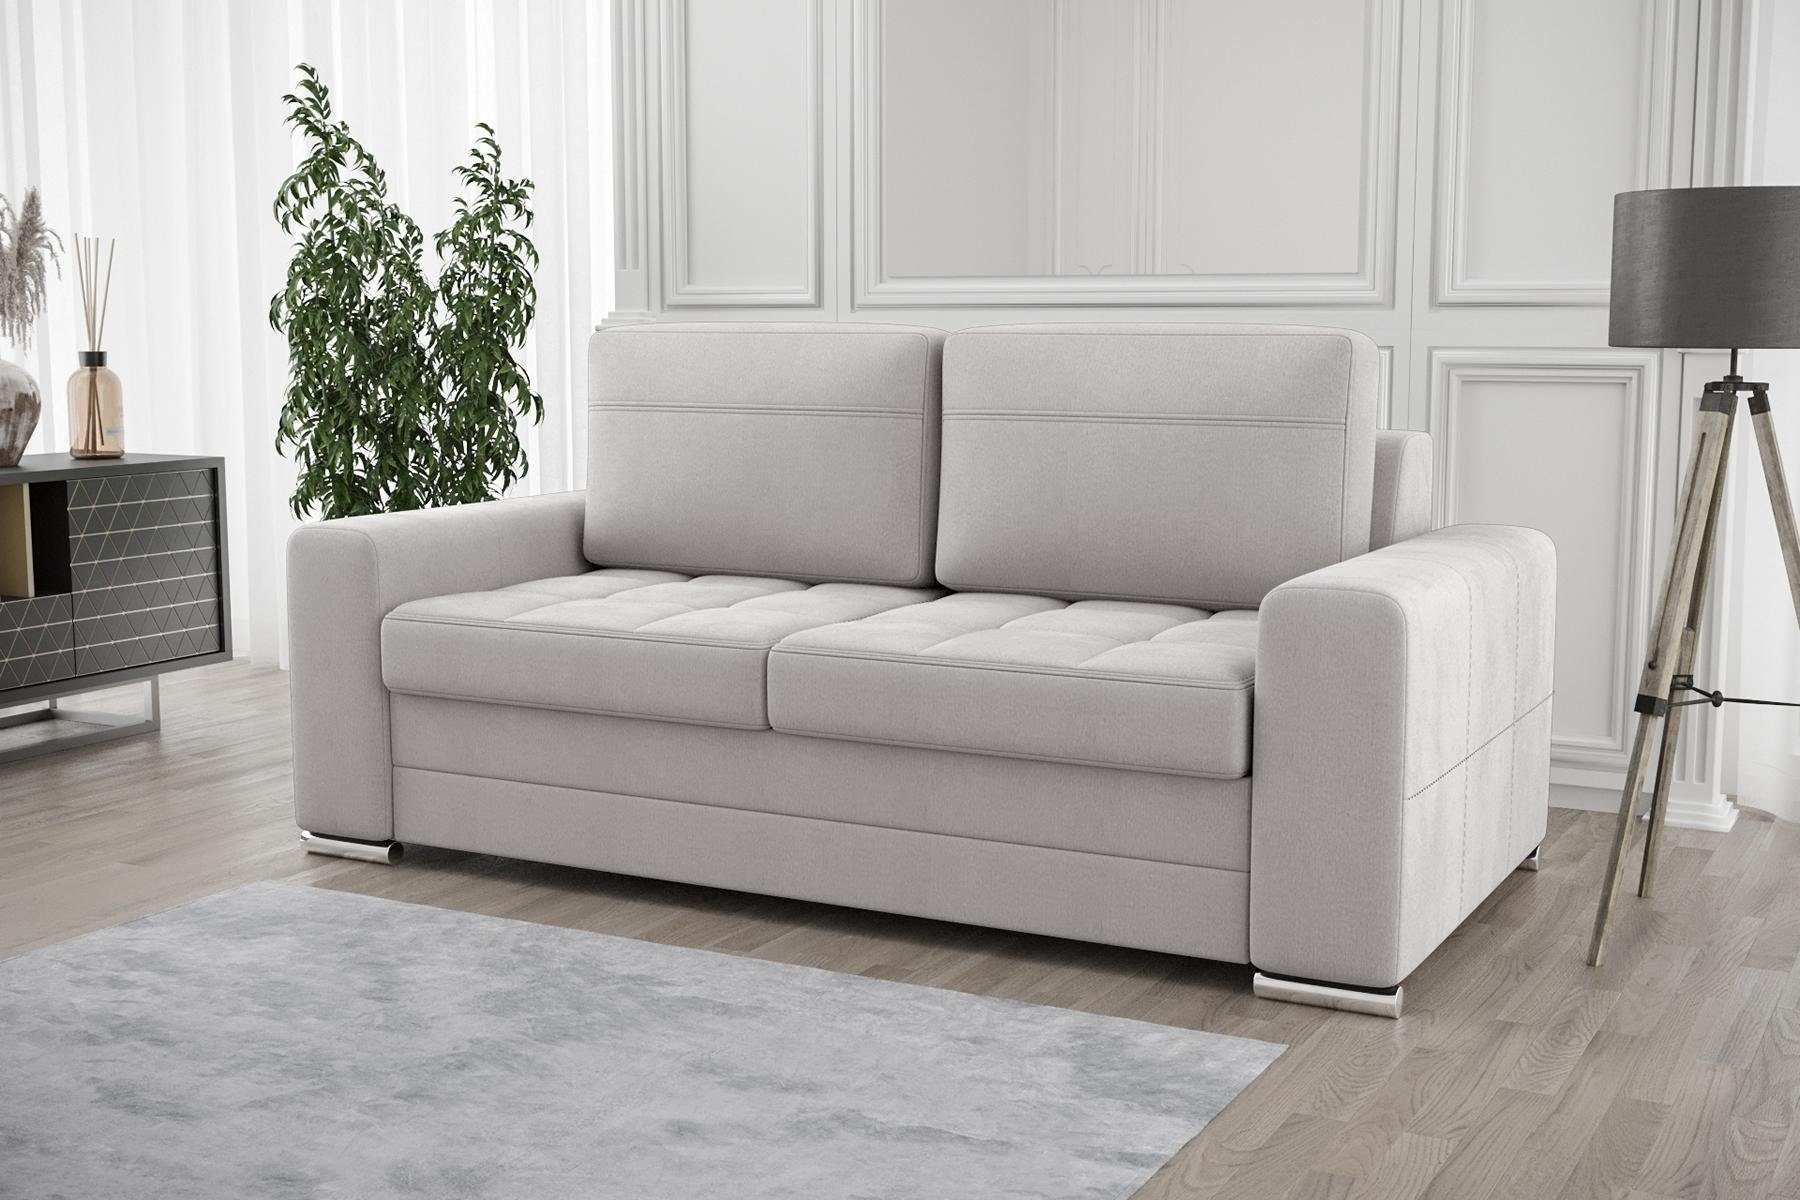 JVmoebel Sofa Design Polster Modern 100% Textil Stoff Modern Zweisitzer, Made in Europe Weiß